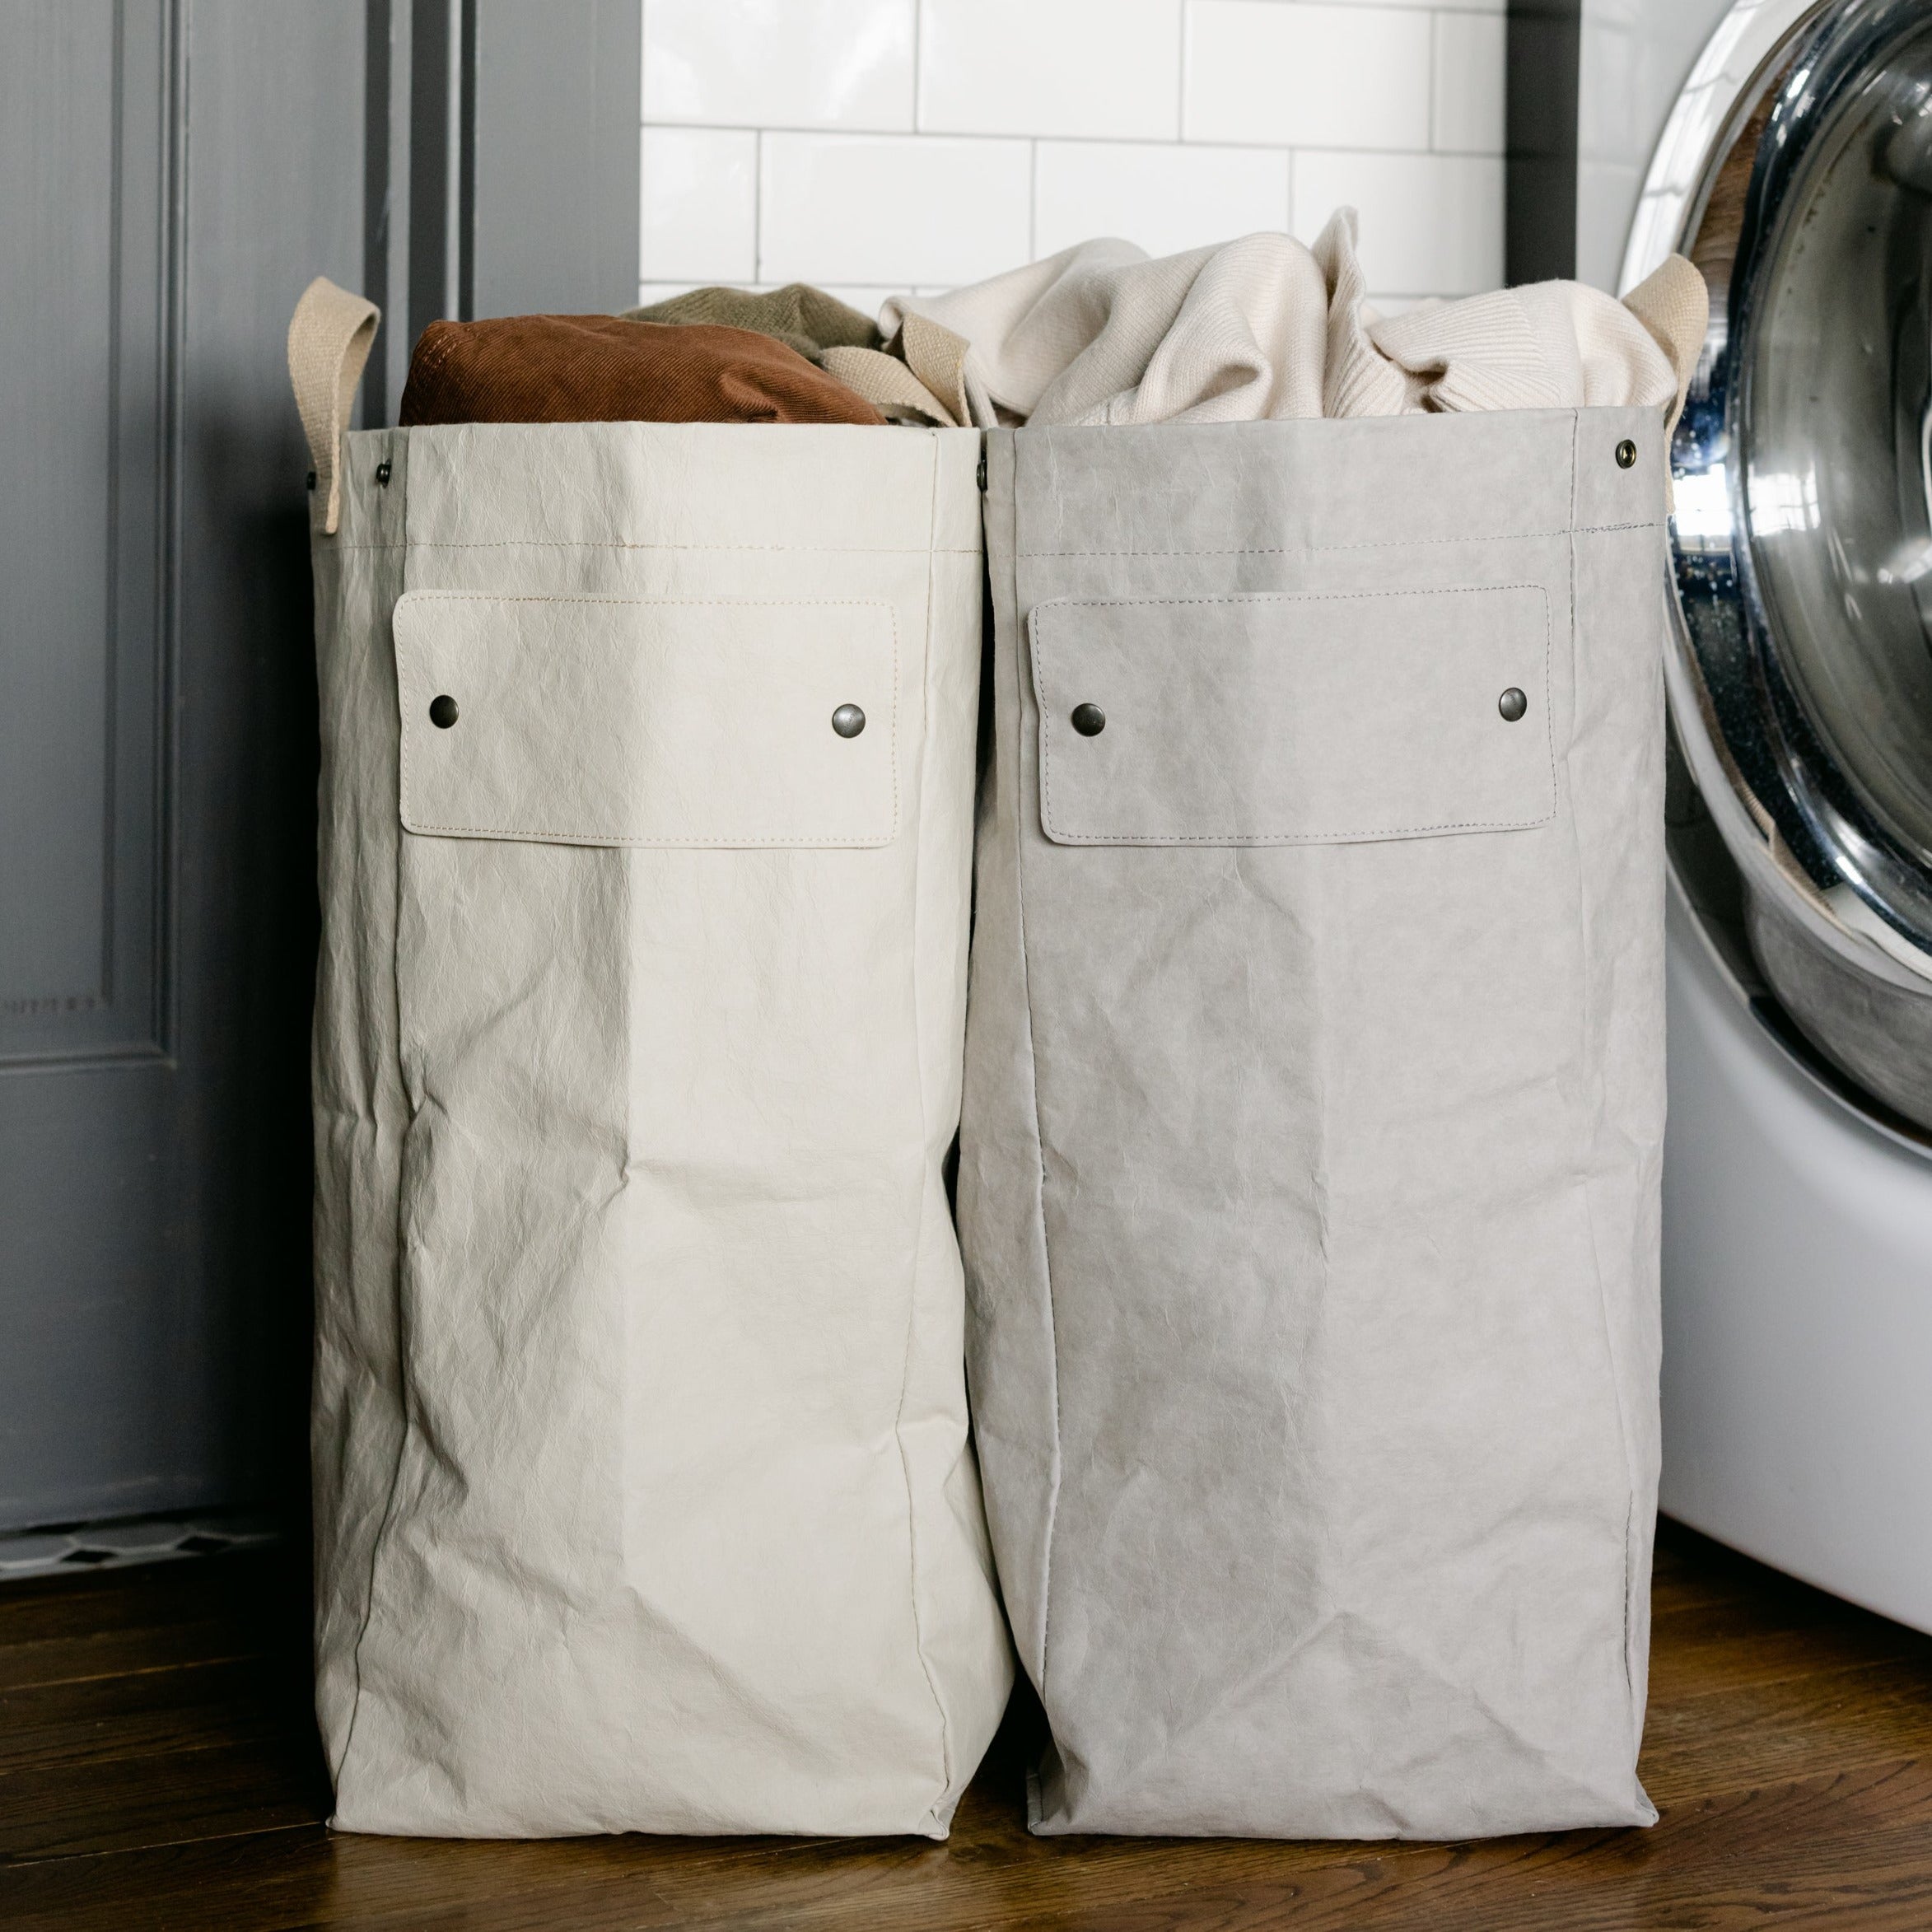 laundry bag for washing machine